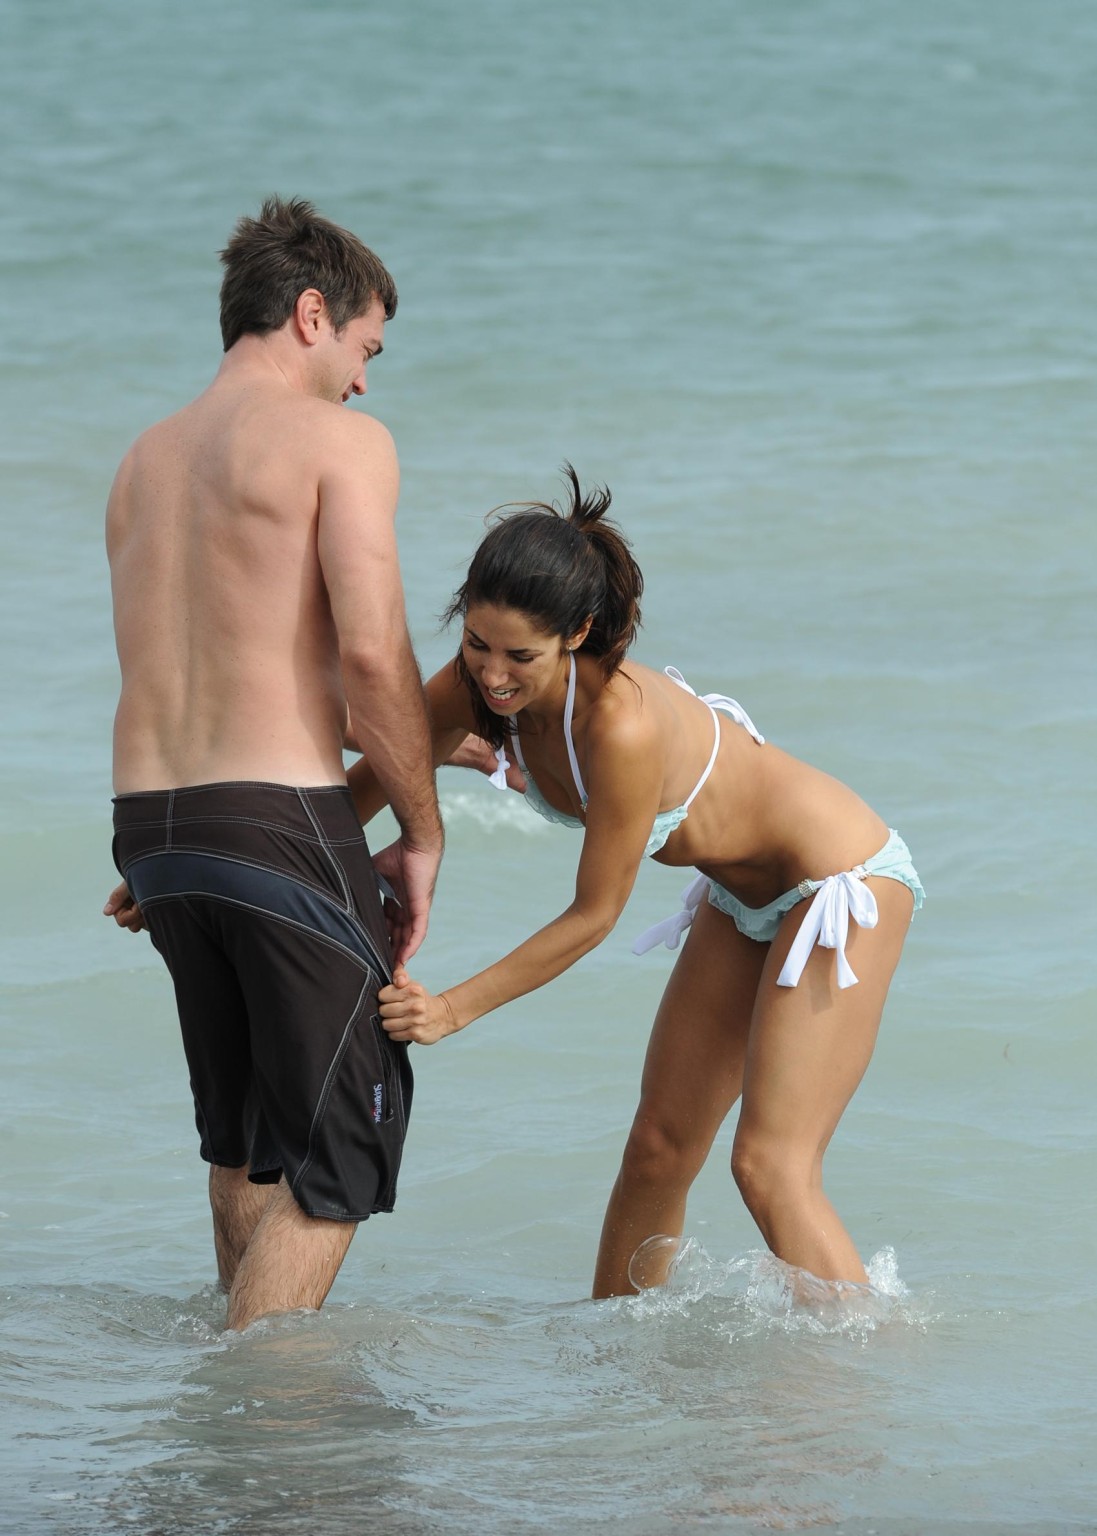 Leilani dowding mostrando su culo desnudo por el problema del bikini en miami
 #75272331